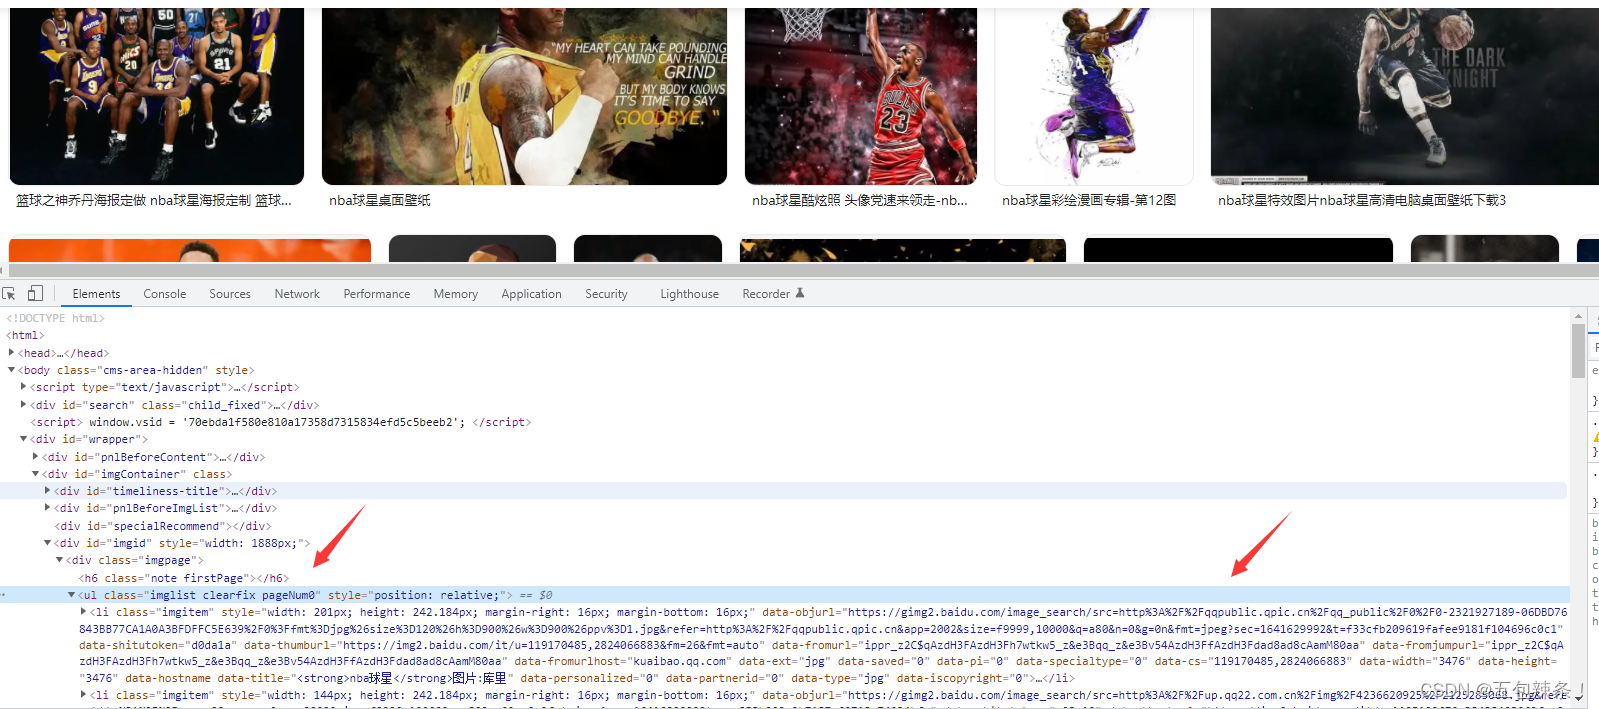 朋友很喜欢打篮球，我用Python爬取了1000张他喜欢的NBA球星图片